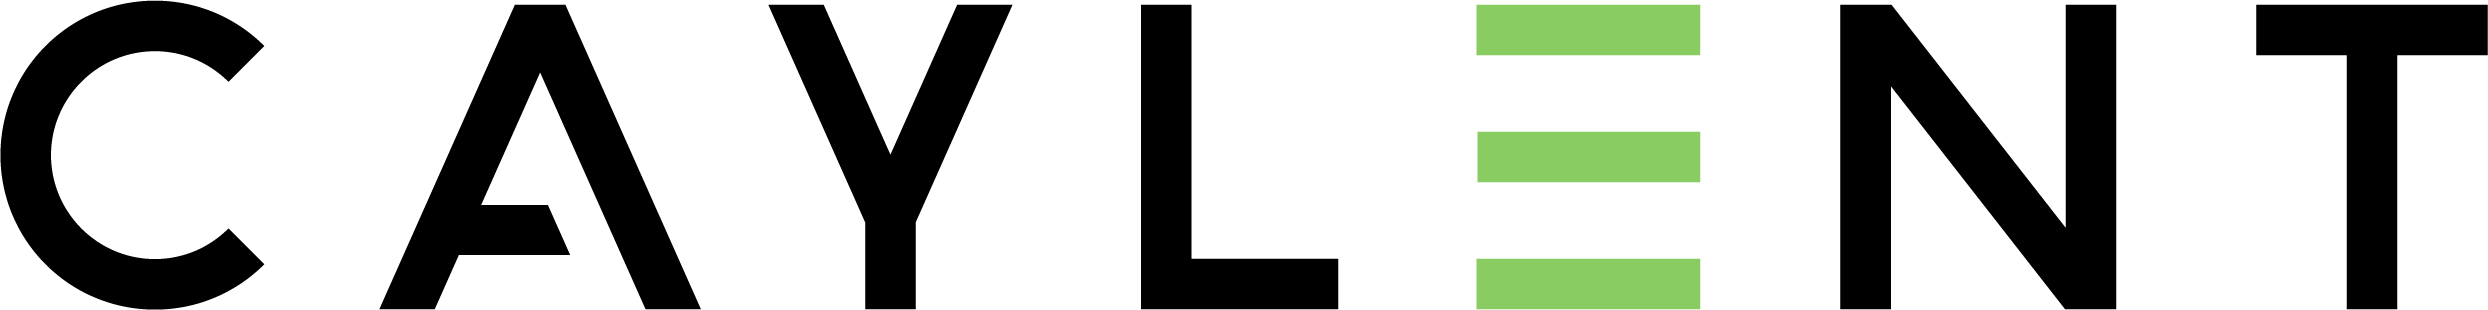 Caylent-Logo